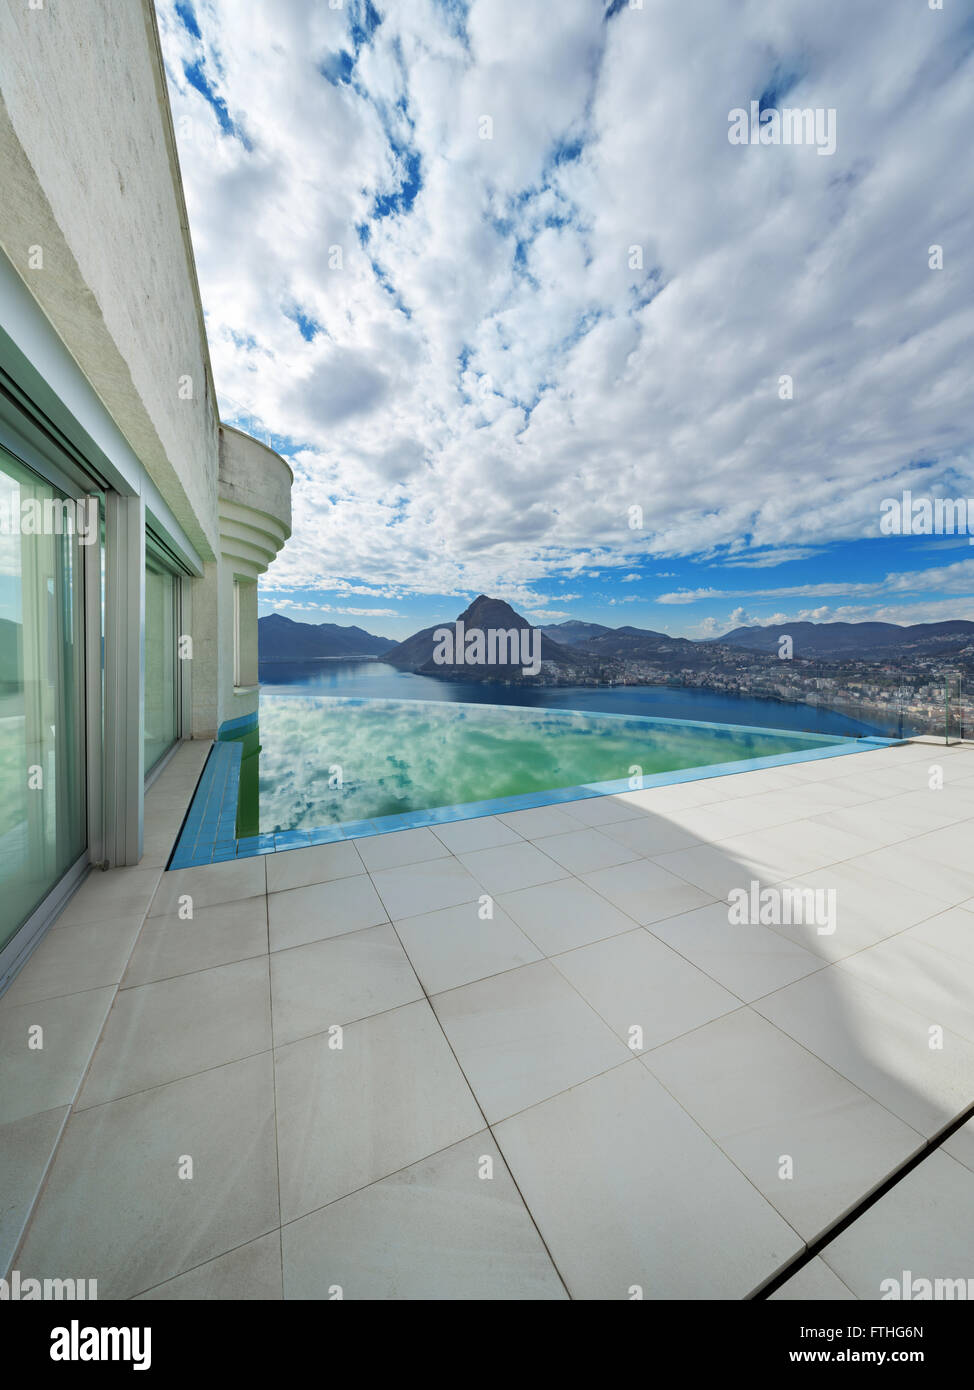 Architecture, paysage magnifique d'une maison moderne avec piscine à débordement Banque D'Images